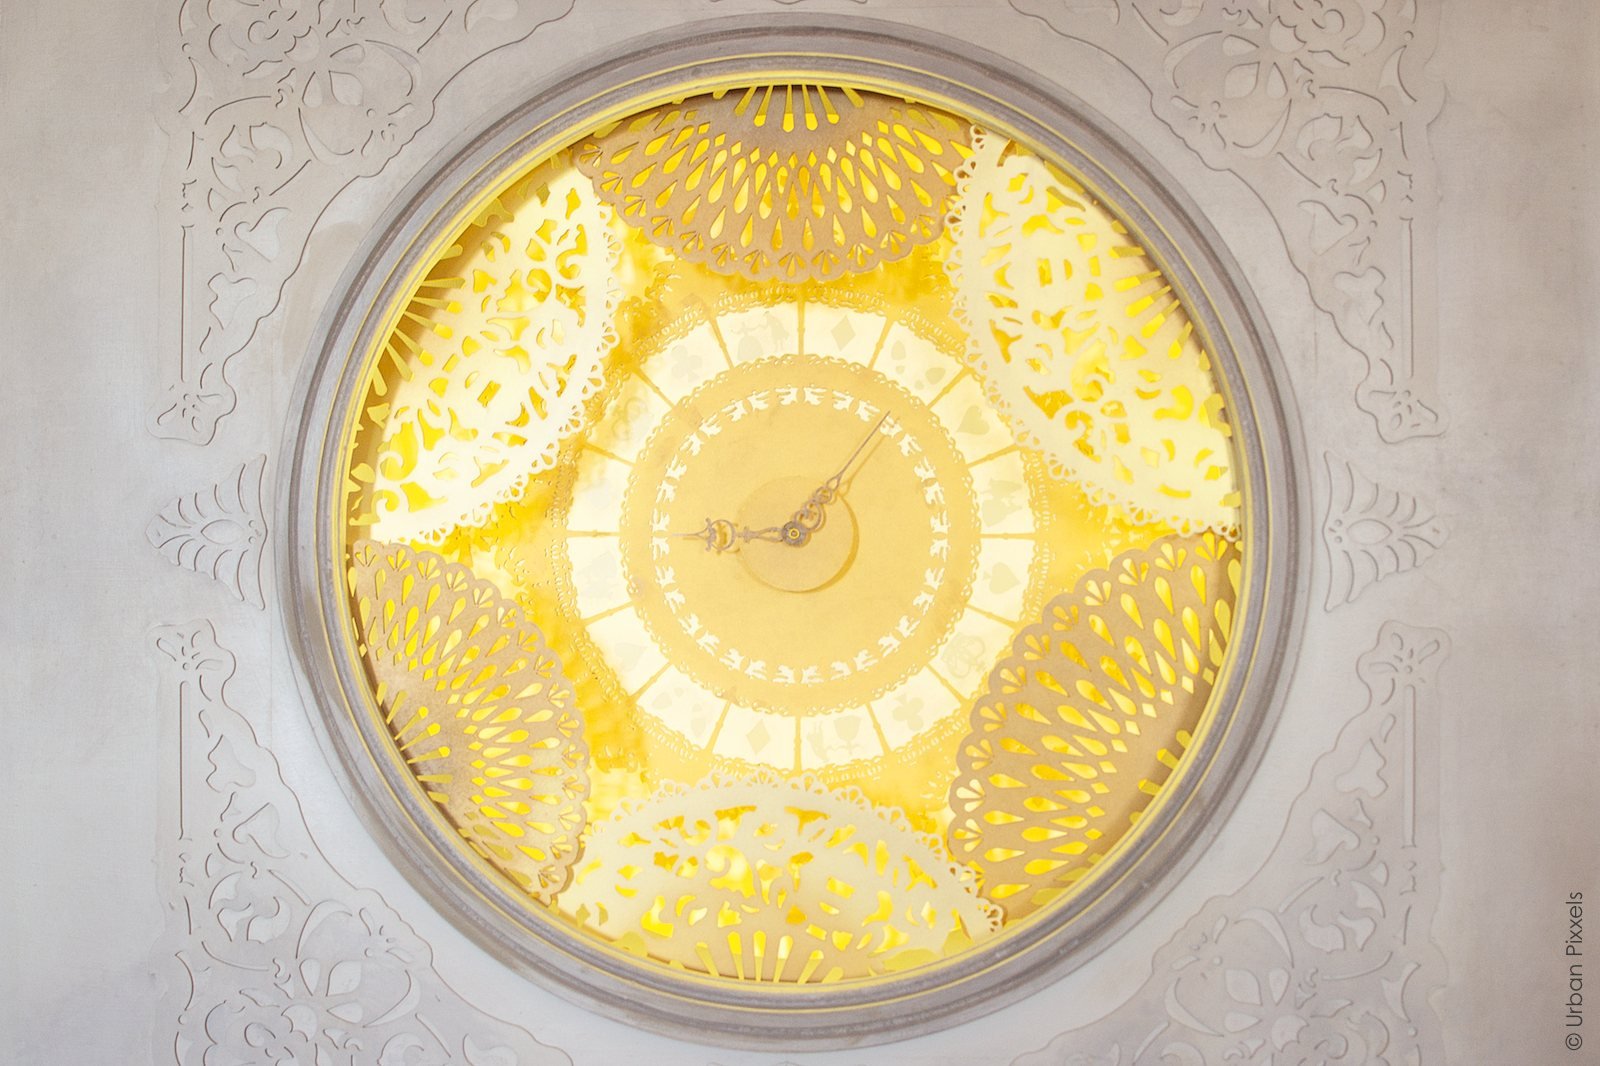 Clock in Kensington Palace London